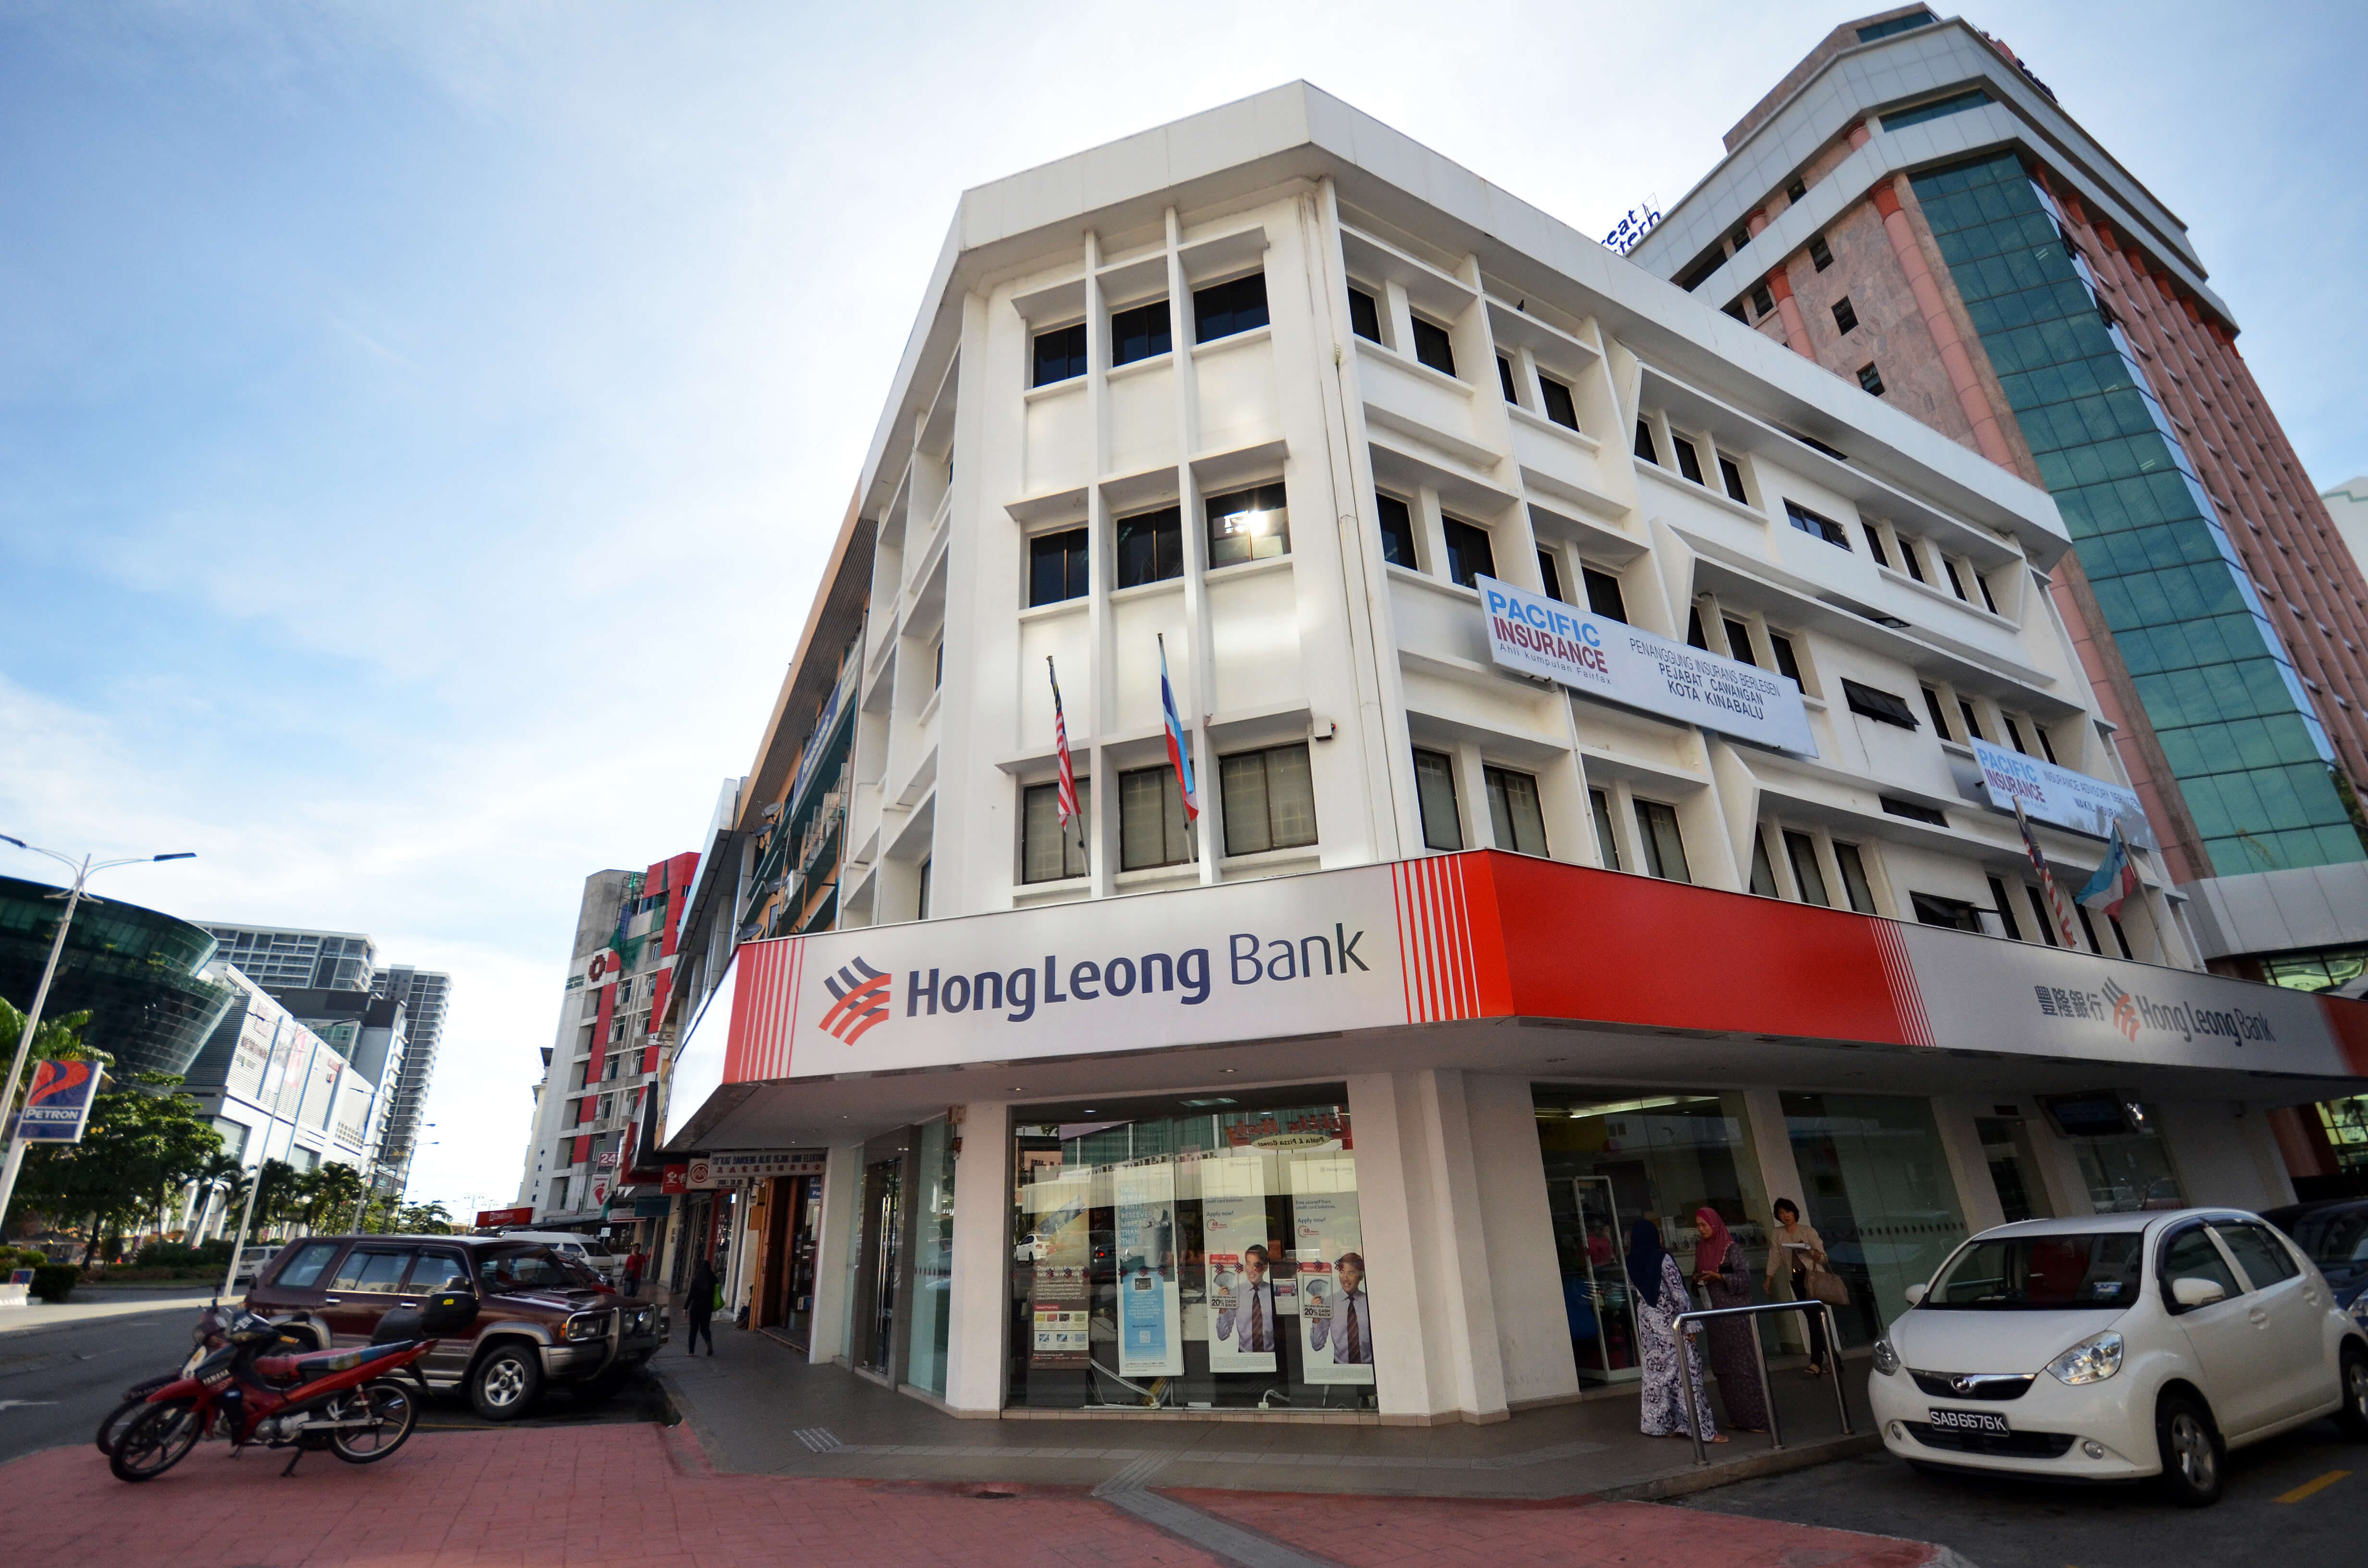 Hongleong bank customer service